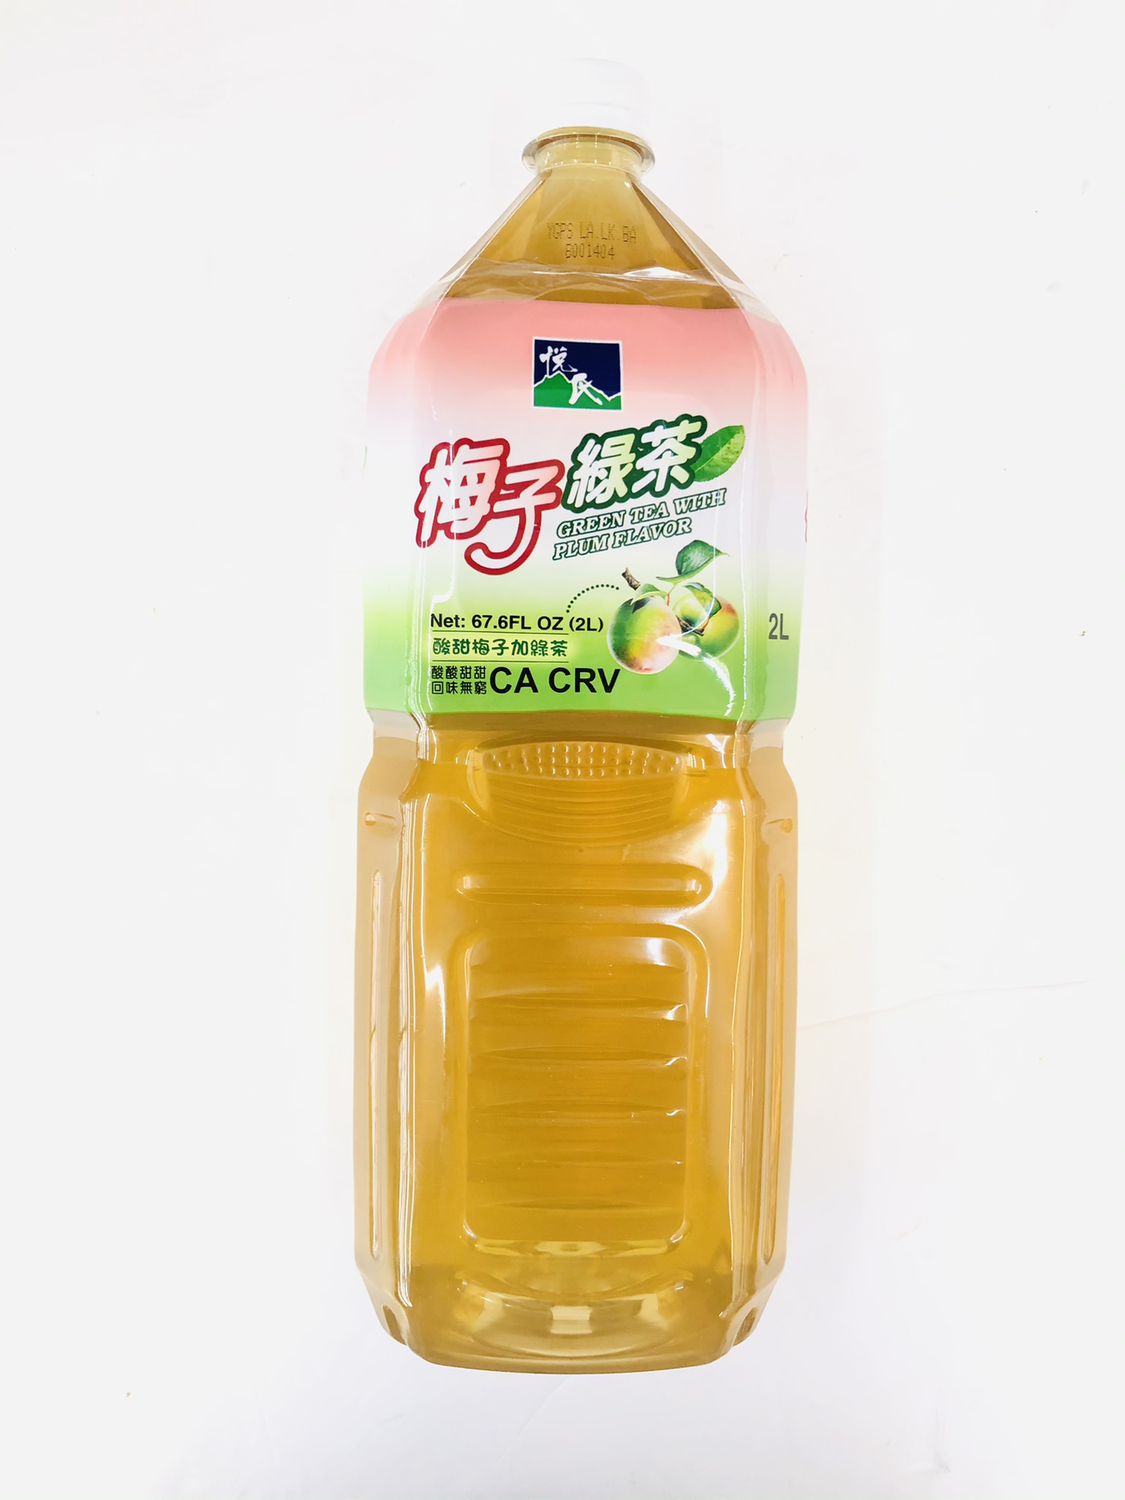 GROC【杂货】悦氏 梅子绿茶 67.6FL OZ (2L)